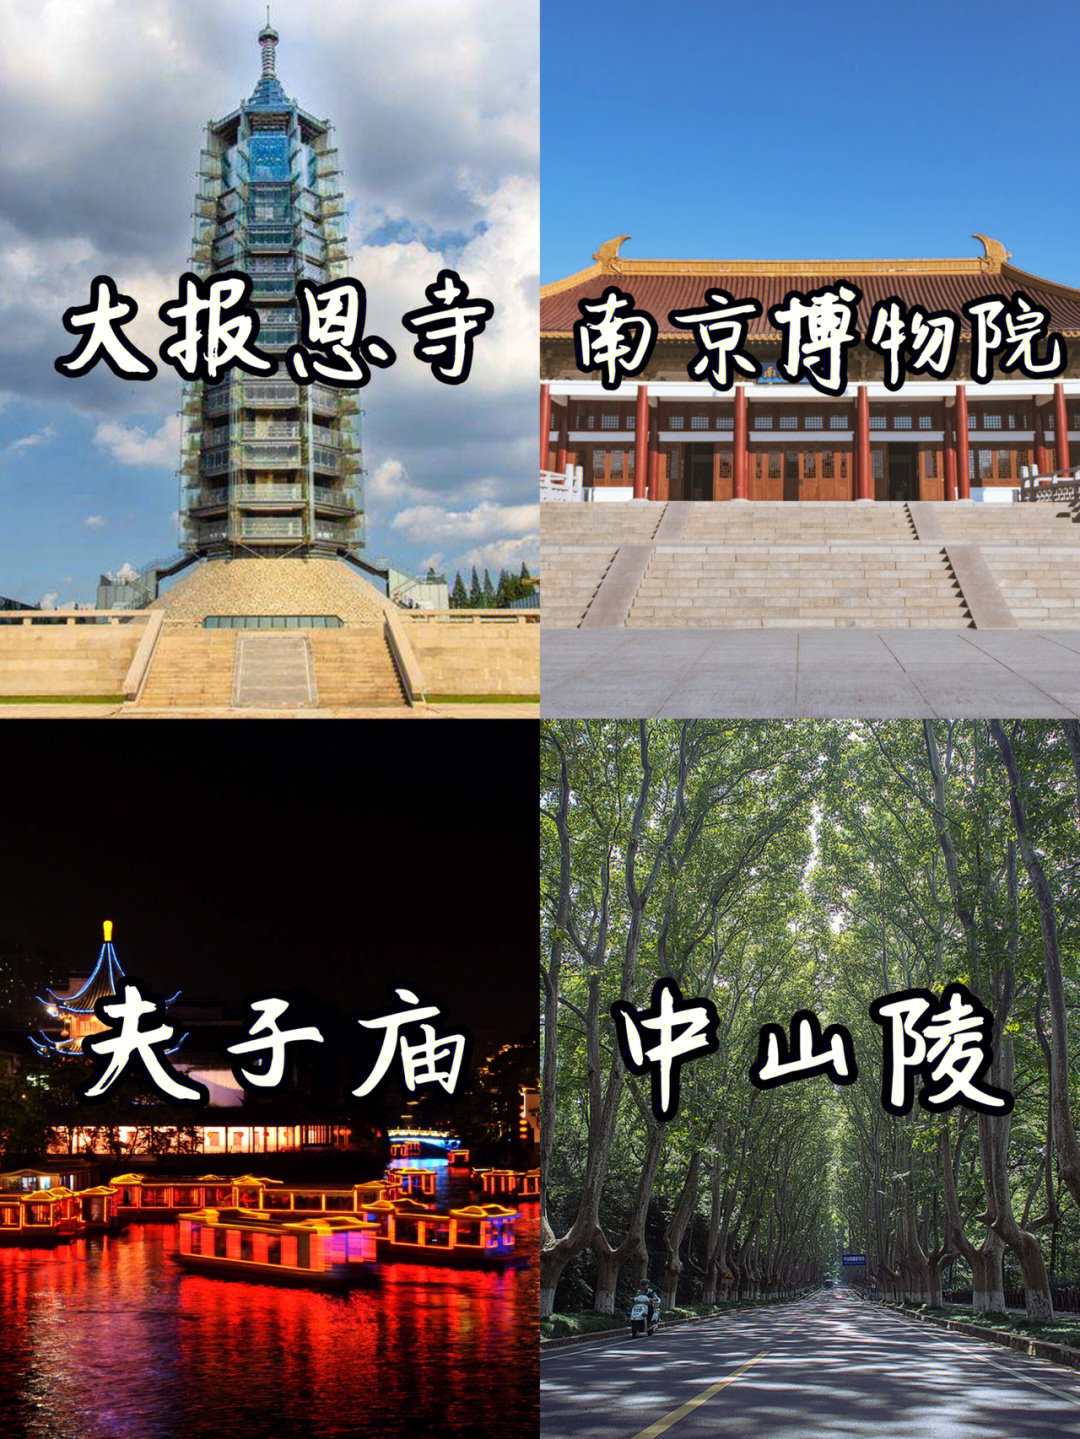 南京是一座承载着历史的城市,文物古迹星罗棋布,自然风光优美迷人